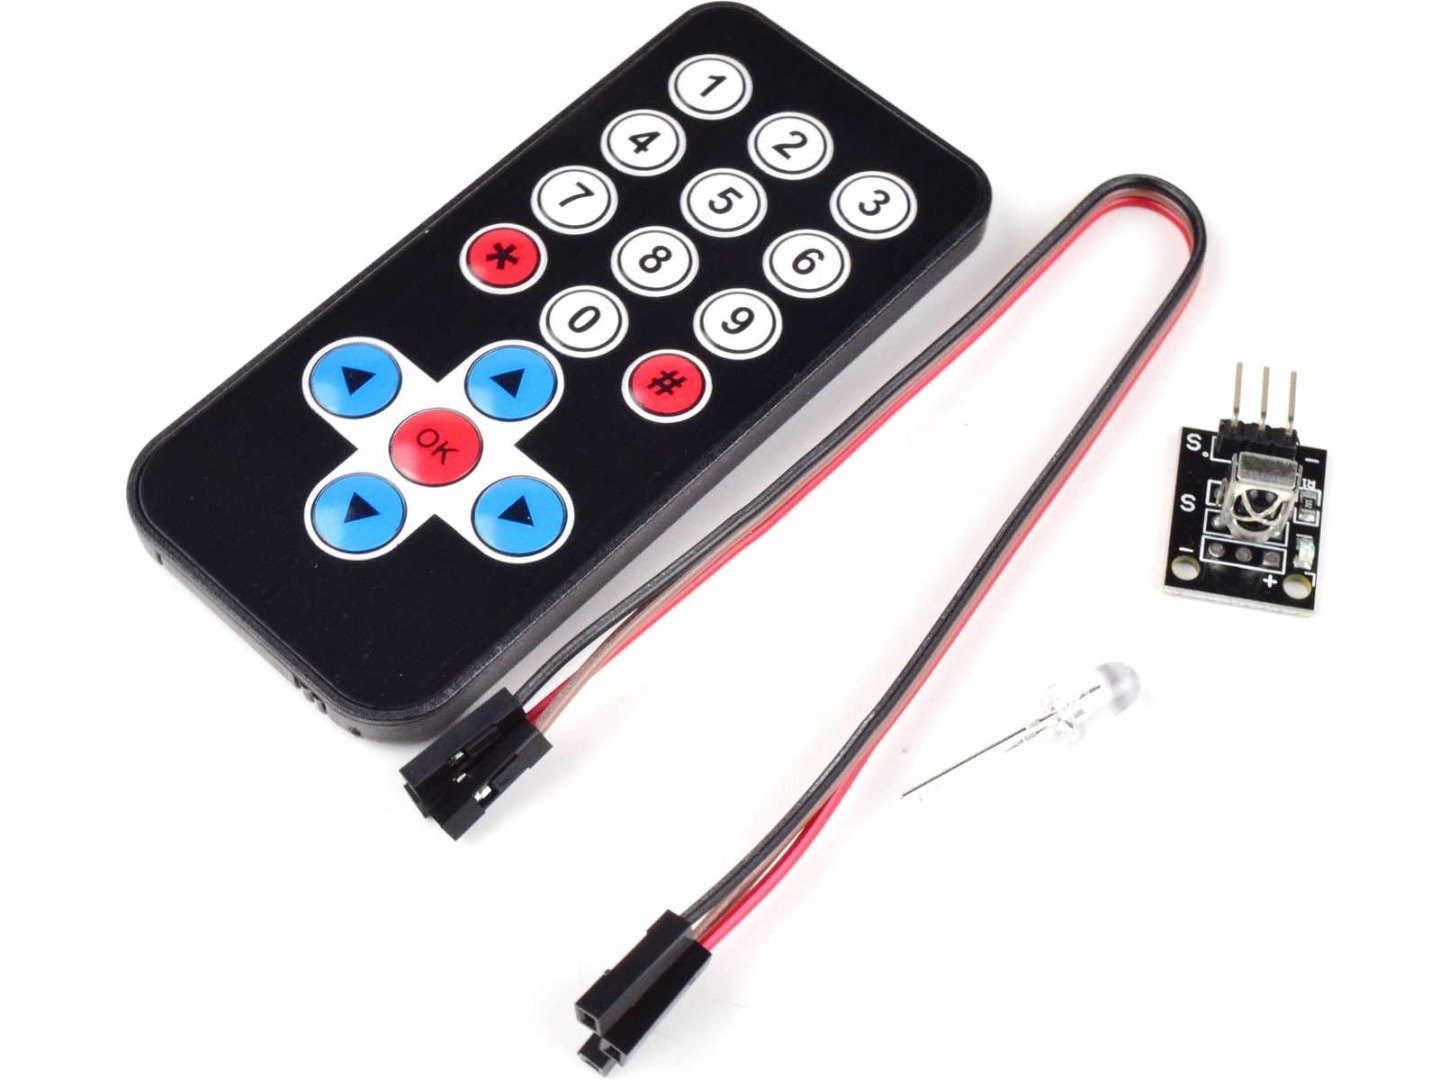 IR Remote Control Sender Receiver Kit for Arduino etc. 4